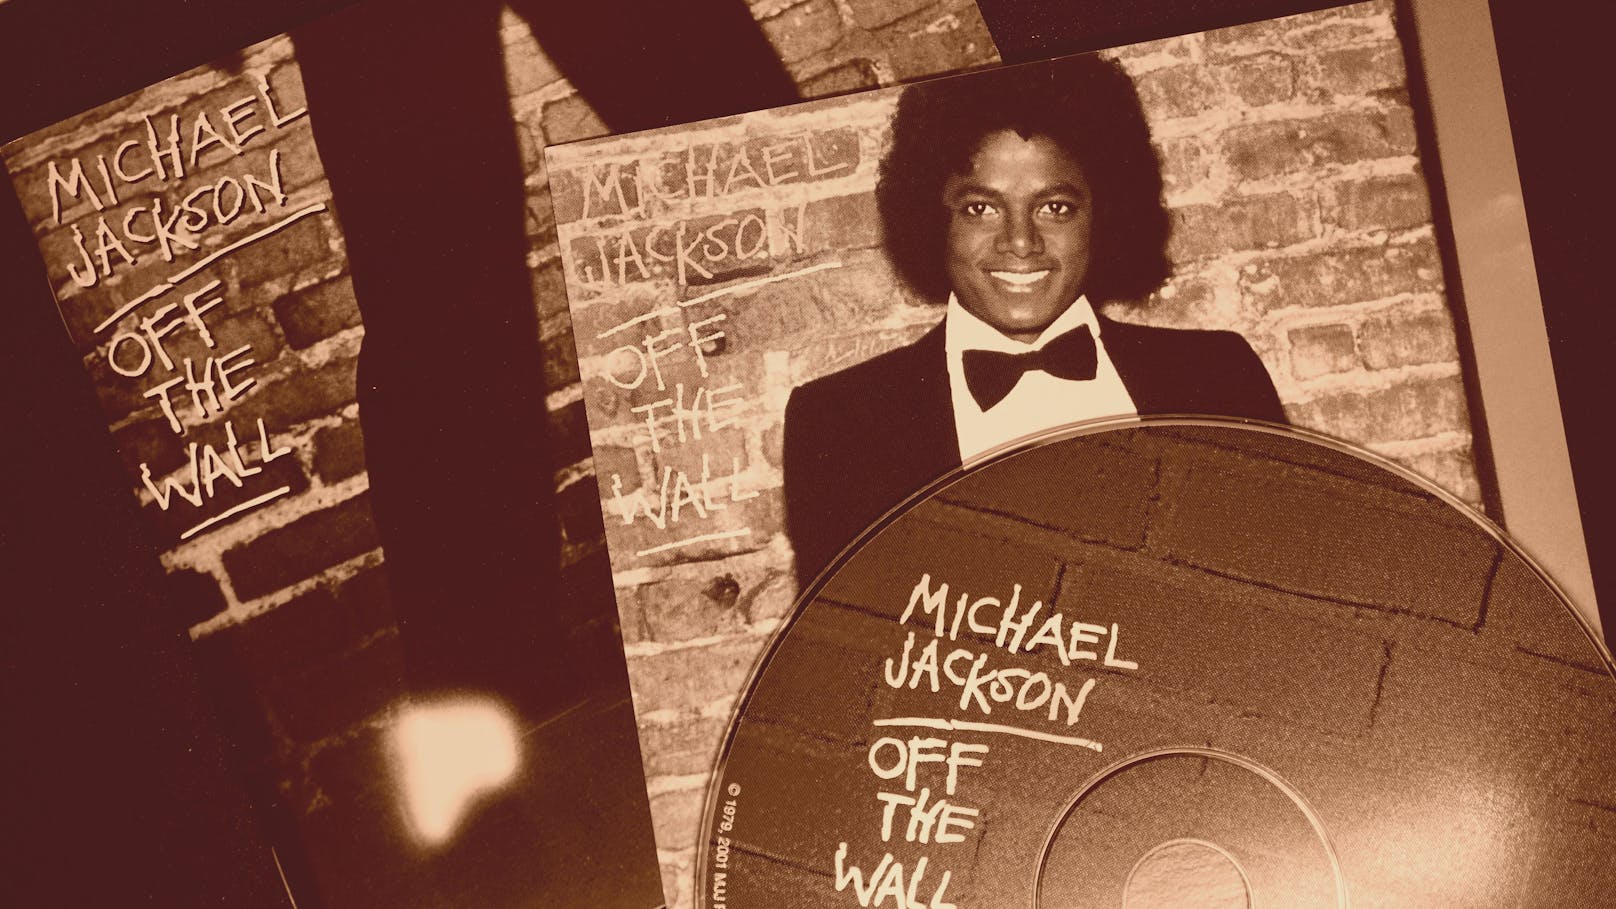 Michael Jackson startete eine erfolgreiche Solokarriere in den 1970er Jahren. Sein Album "Off the Wall" von 1979 war ein kritischer und kommerzieller Erfolg.